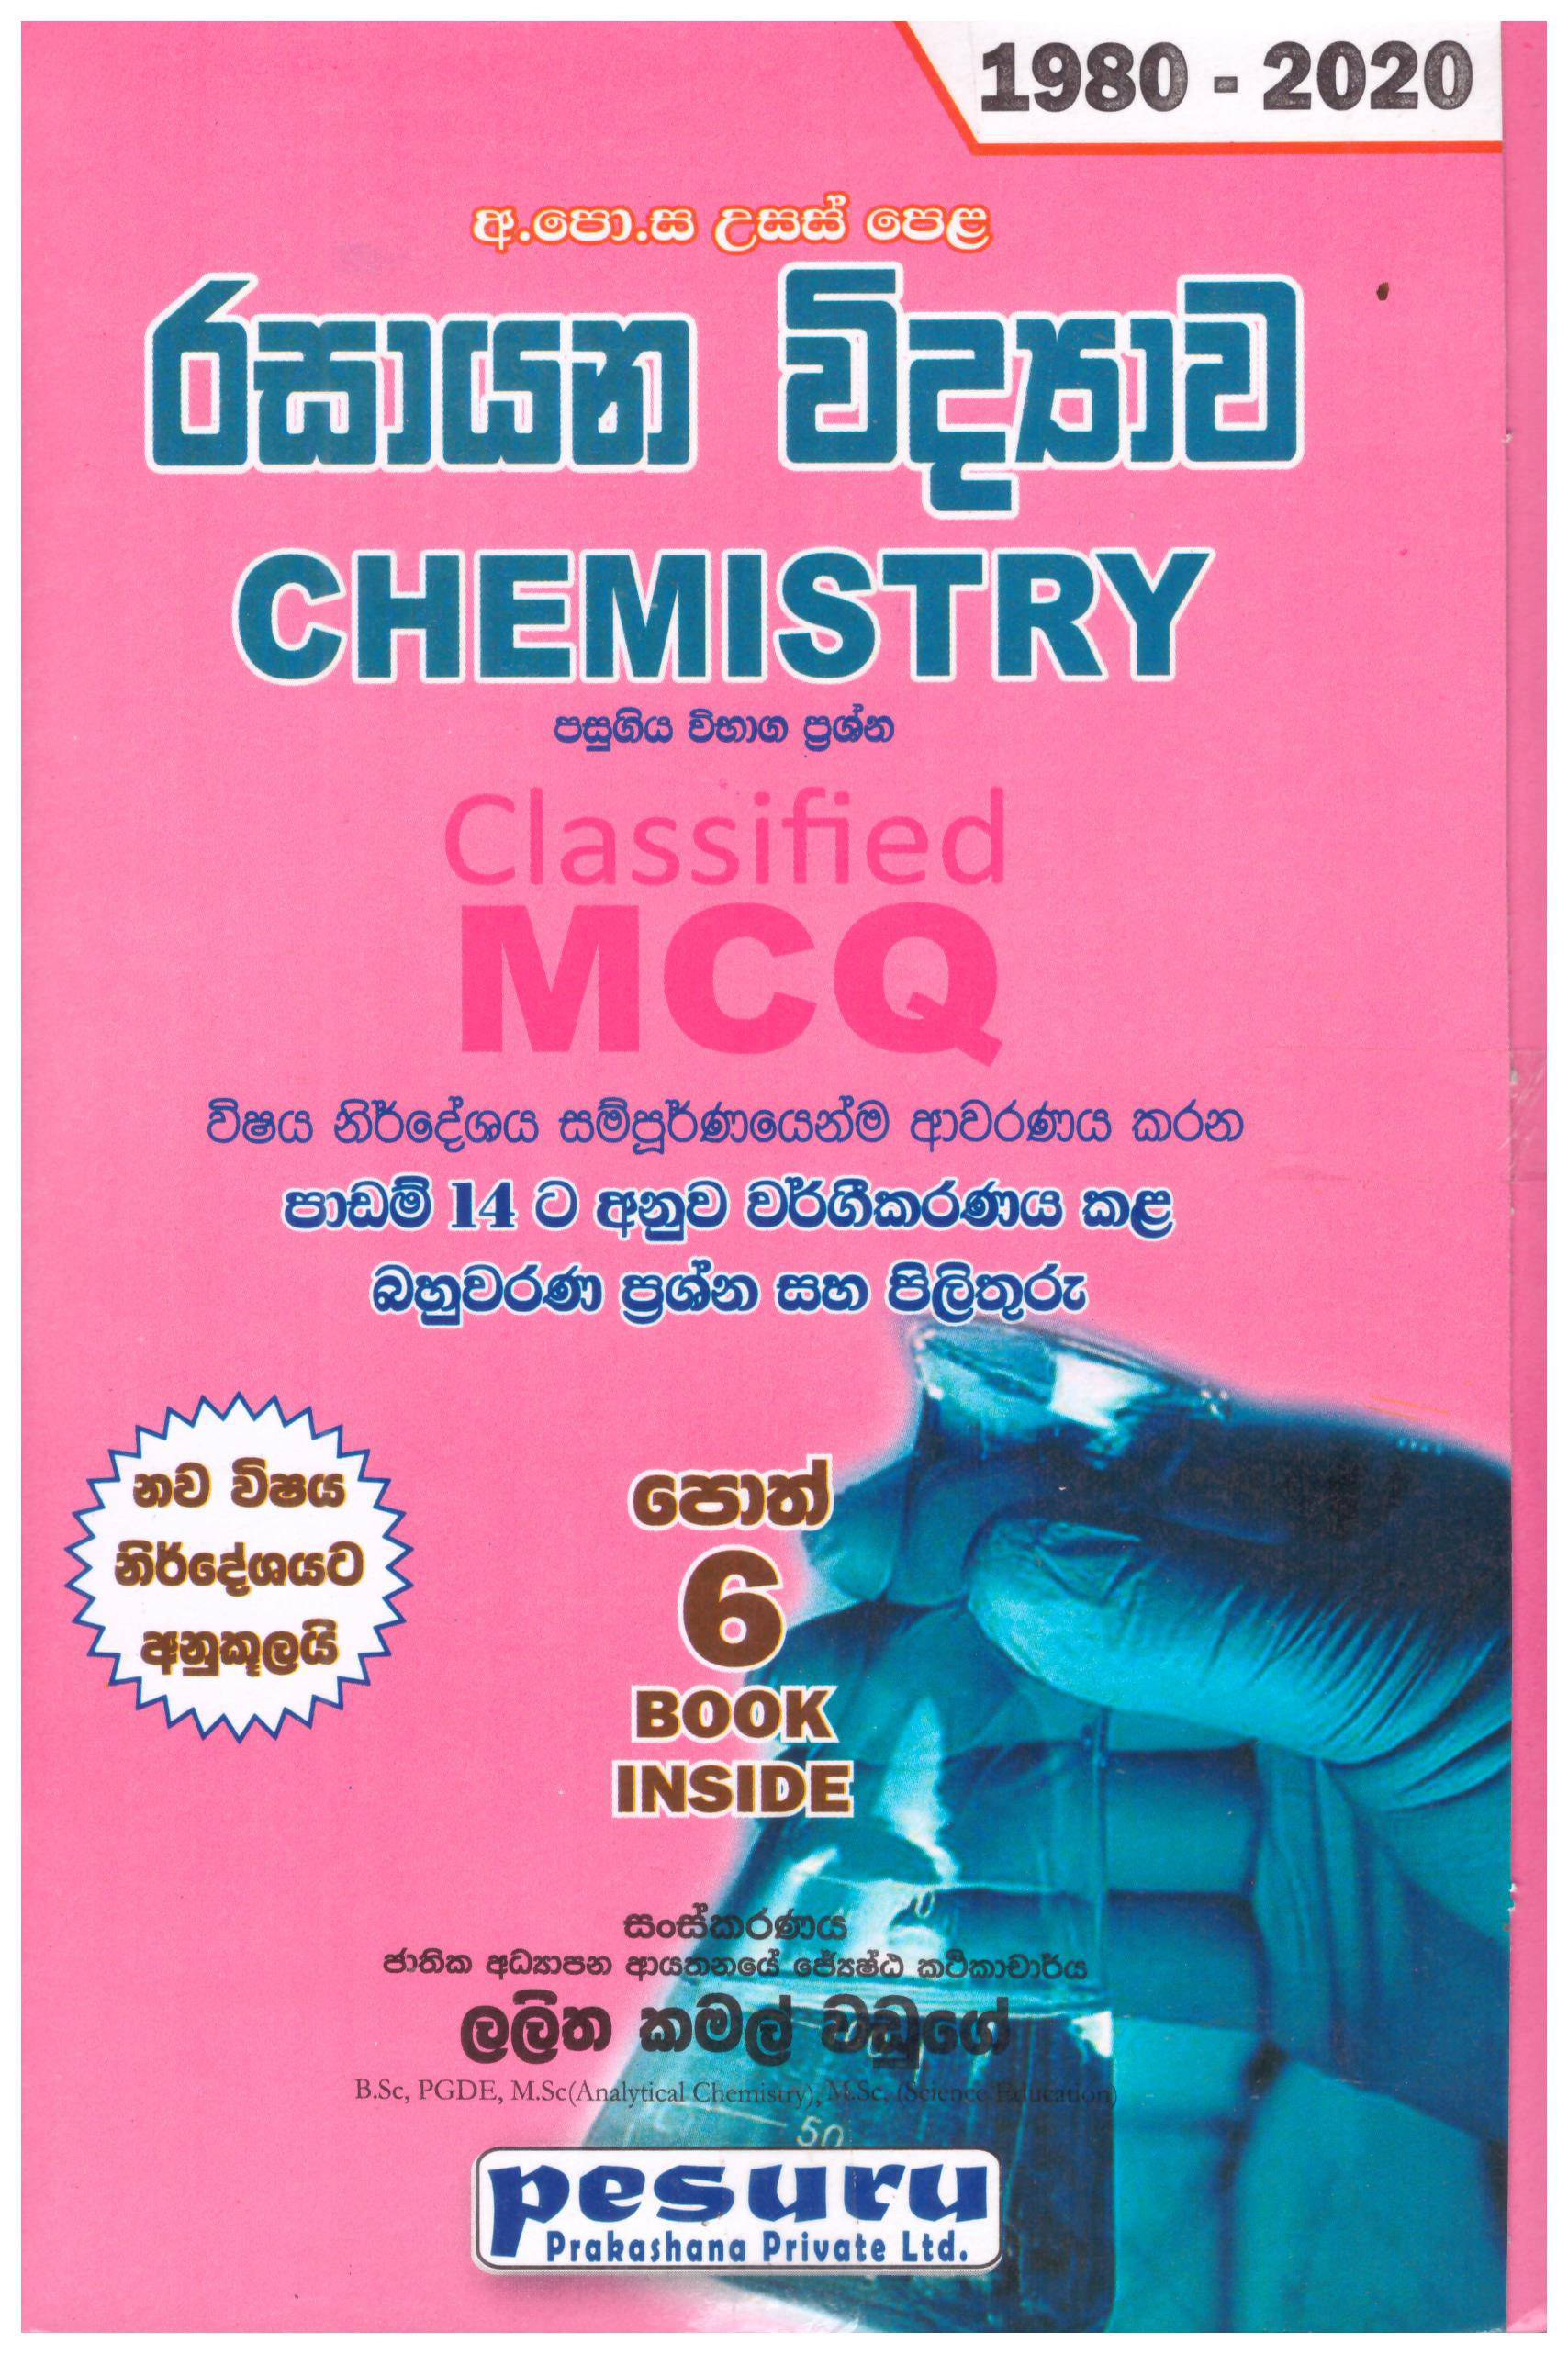 Pesuru A/L Chemistry Classified MCQ 1980 - 2020 - Sinhala Medium